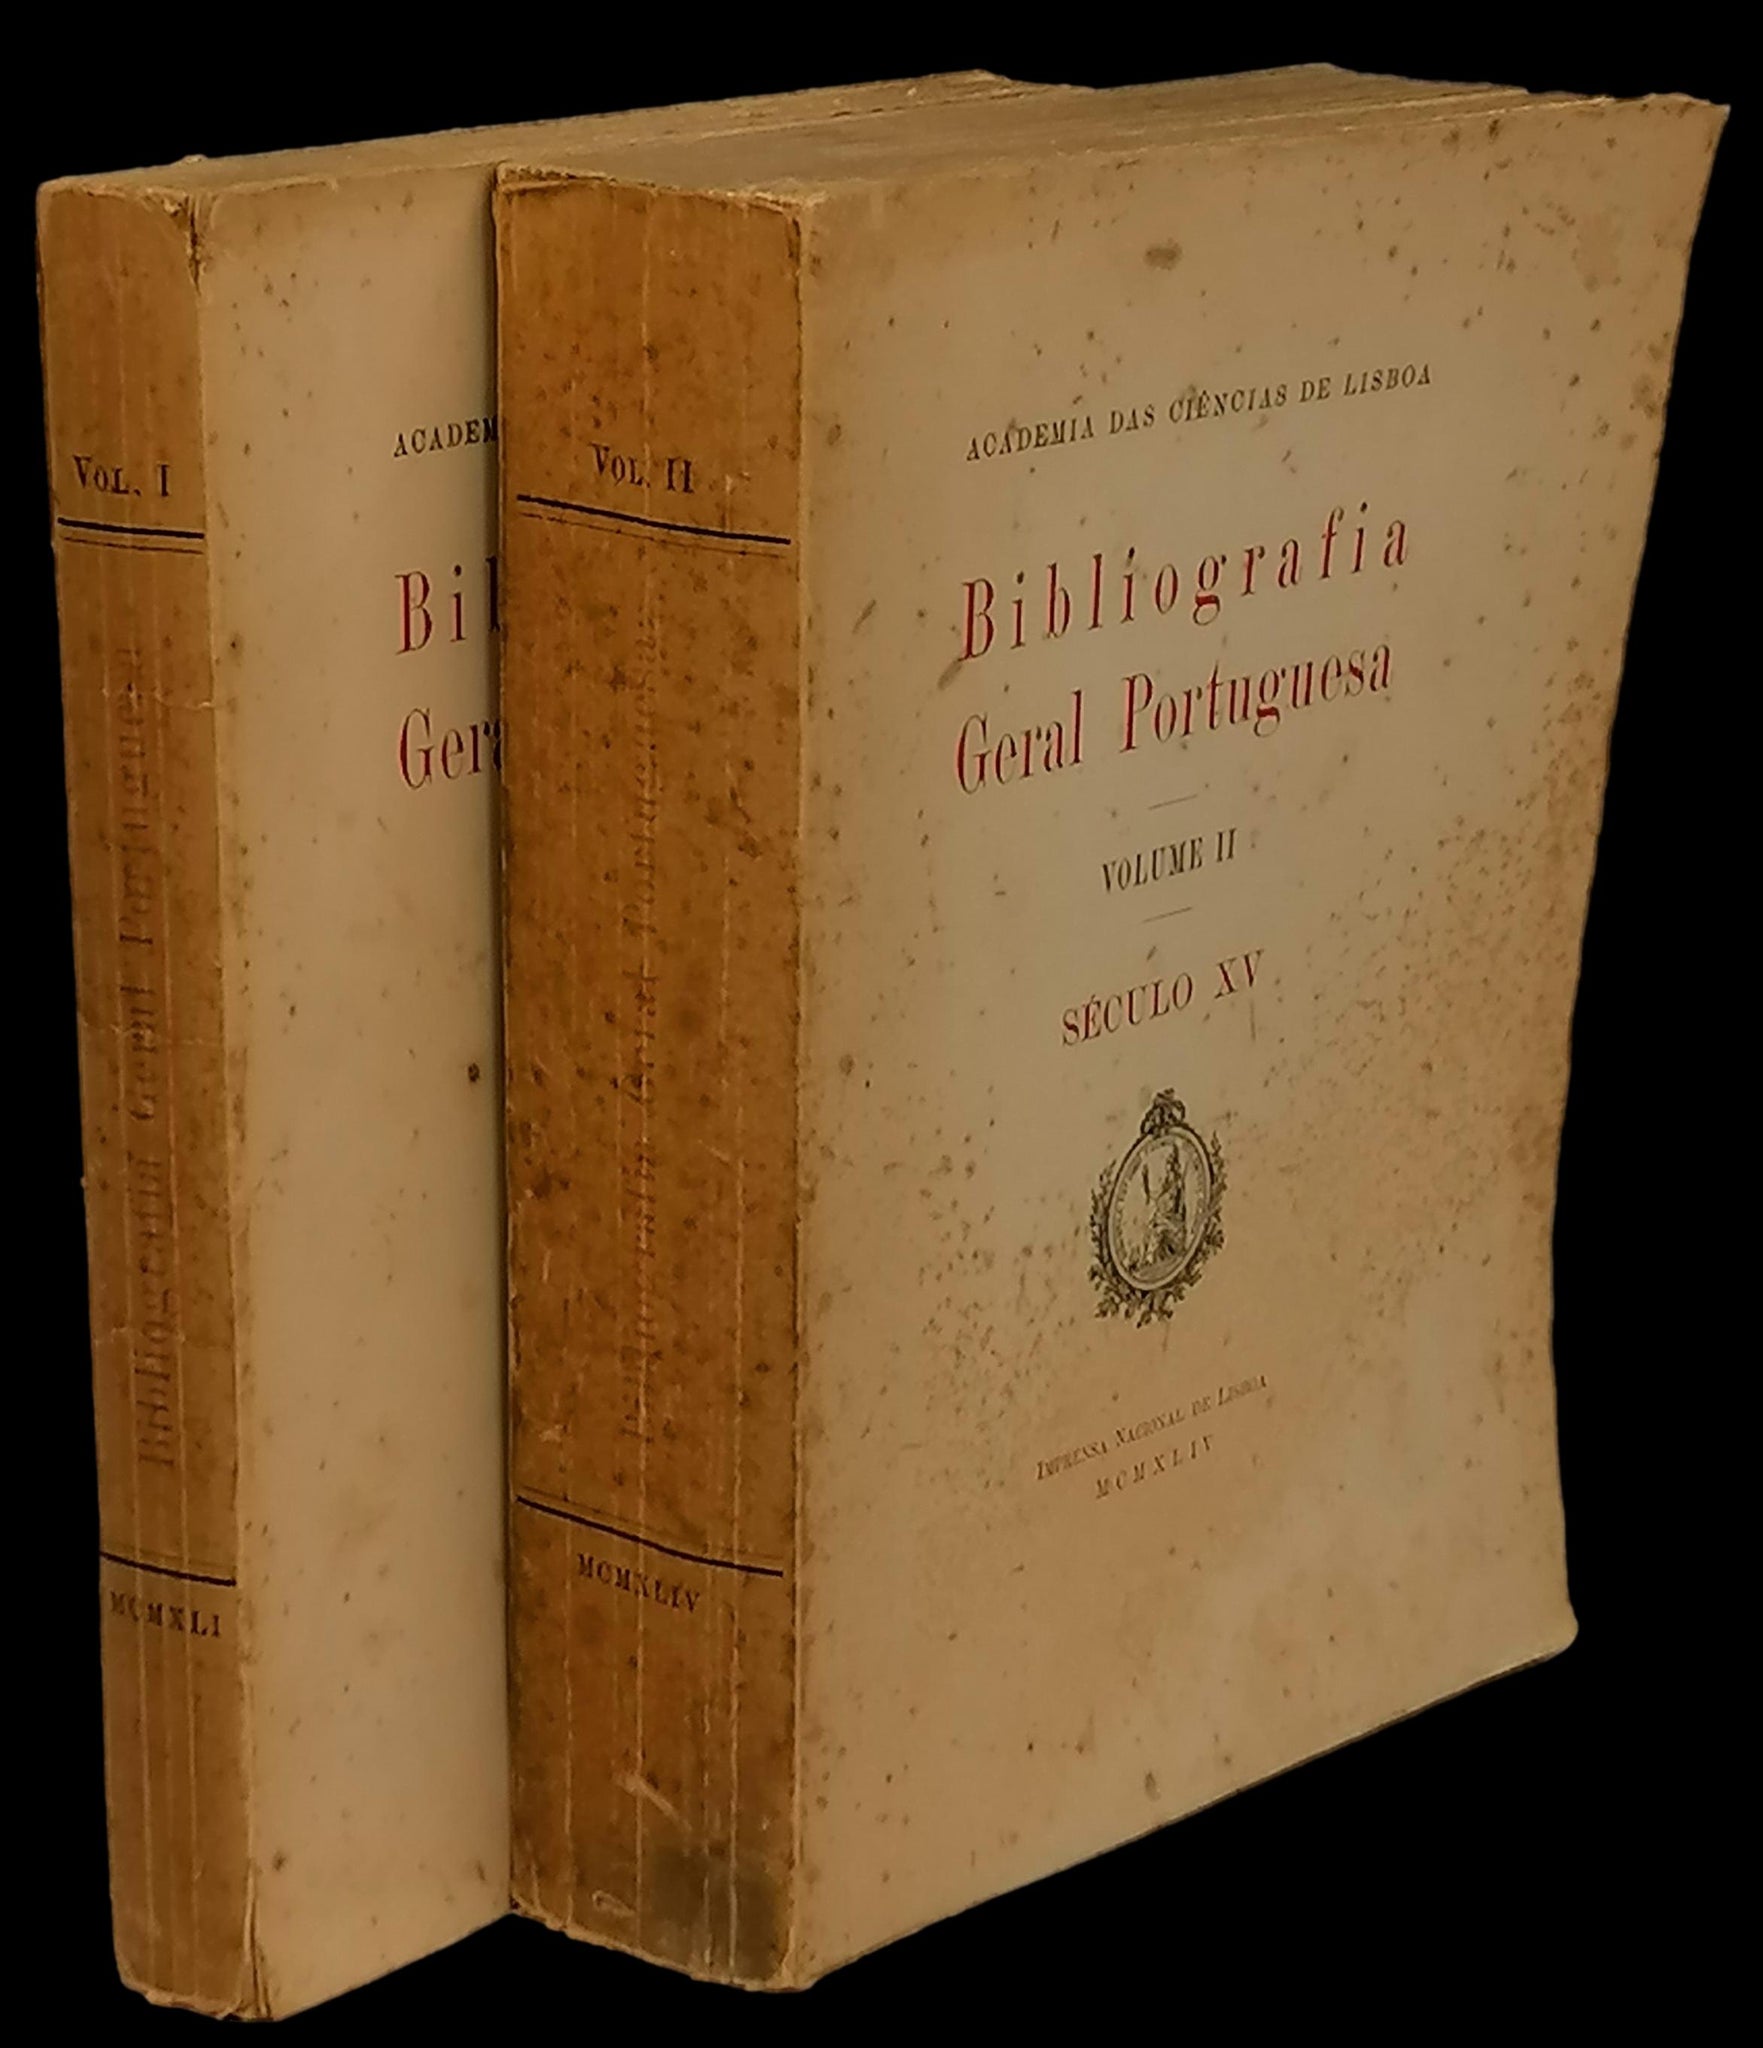 Bibliografia das Obras Impressas em Portugal